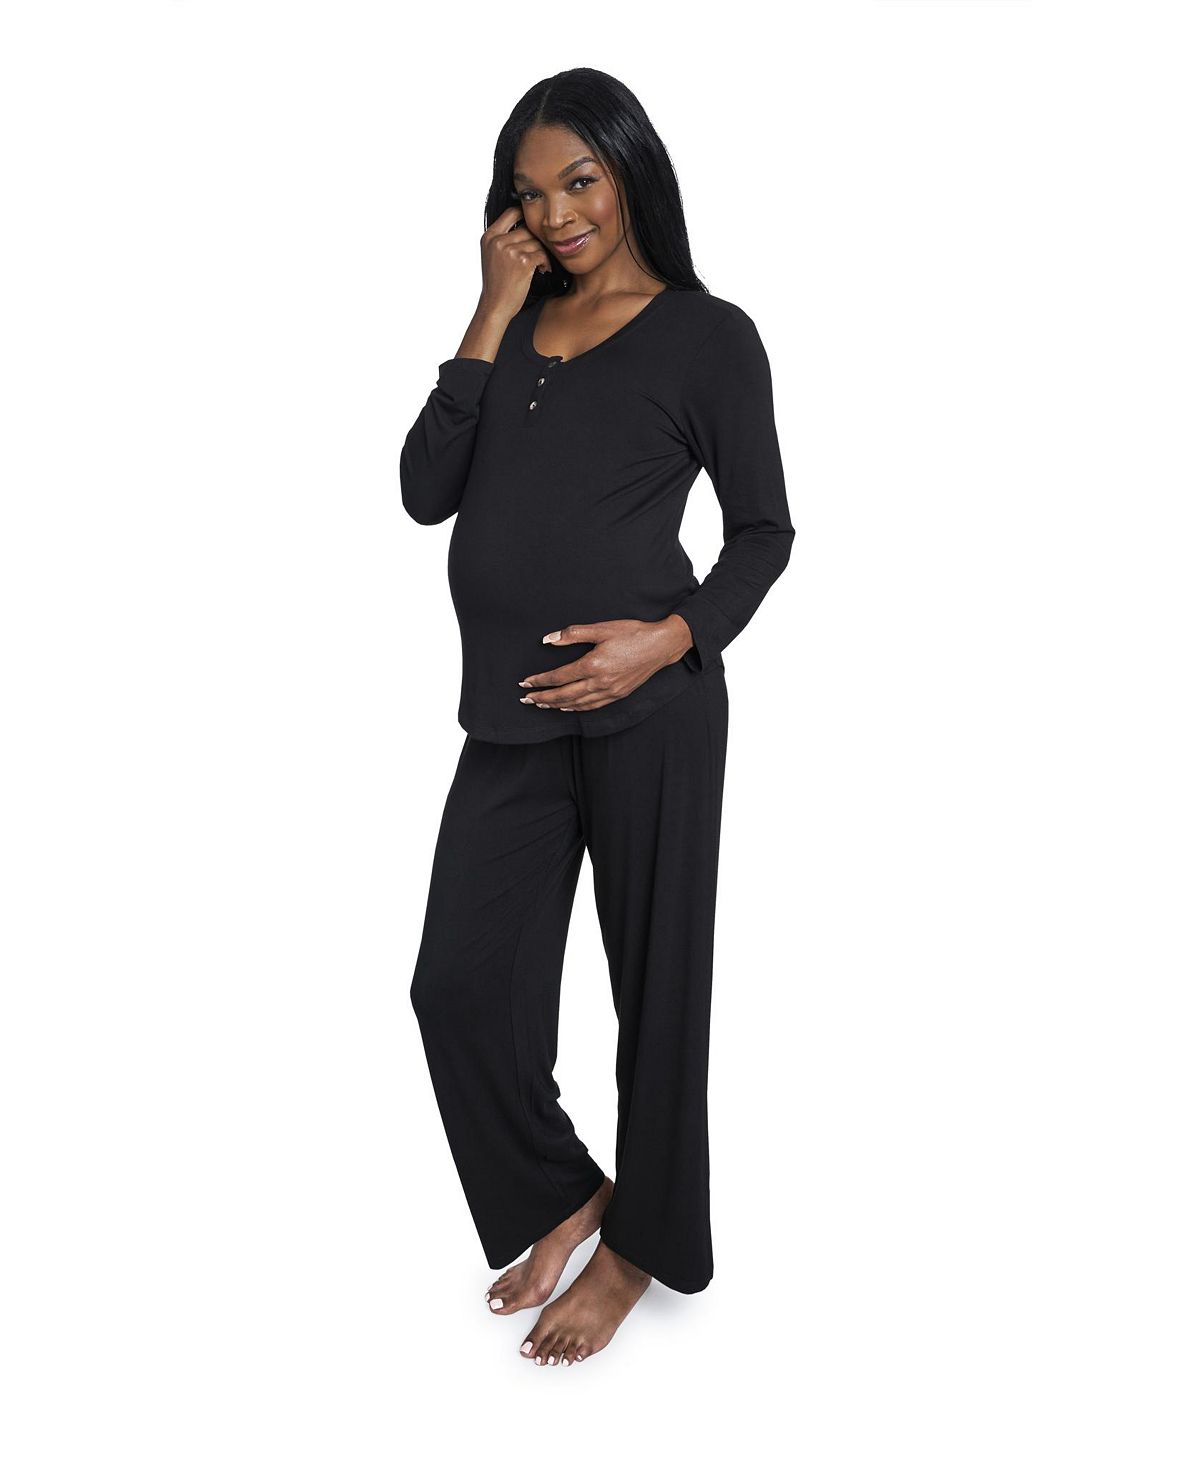 Женский пижамный комплект laina top & pants для беременных и кормящих мам Everly Grey, черный